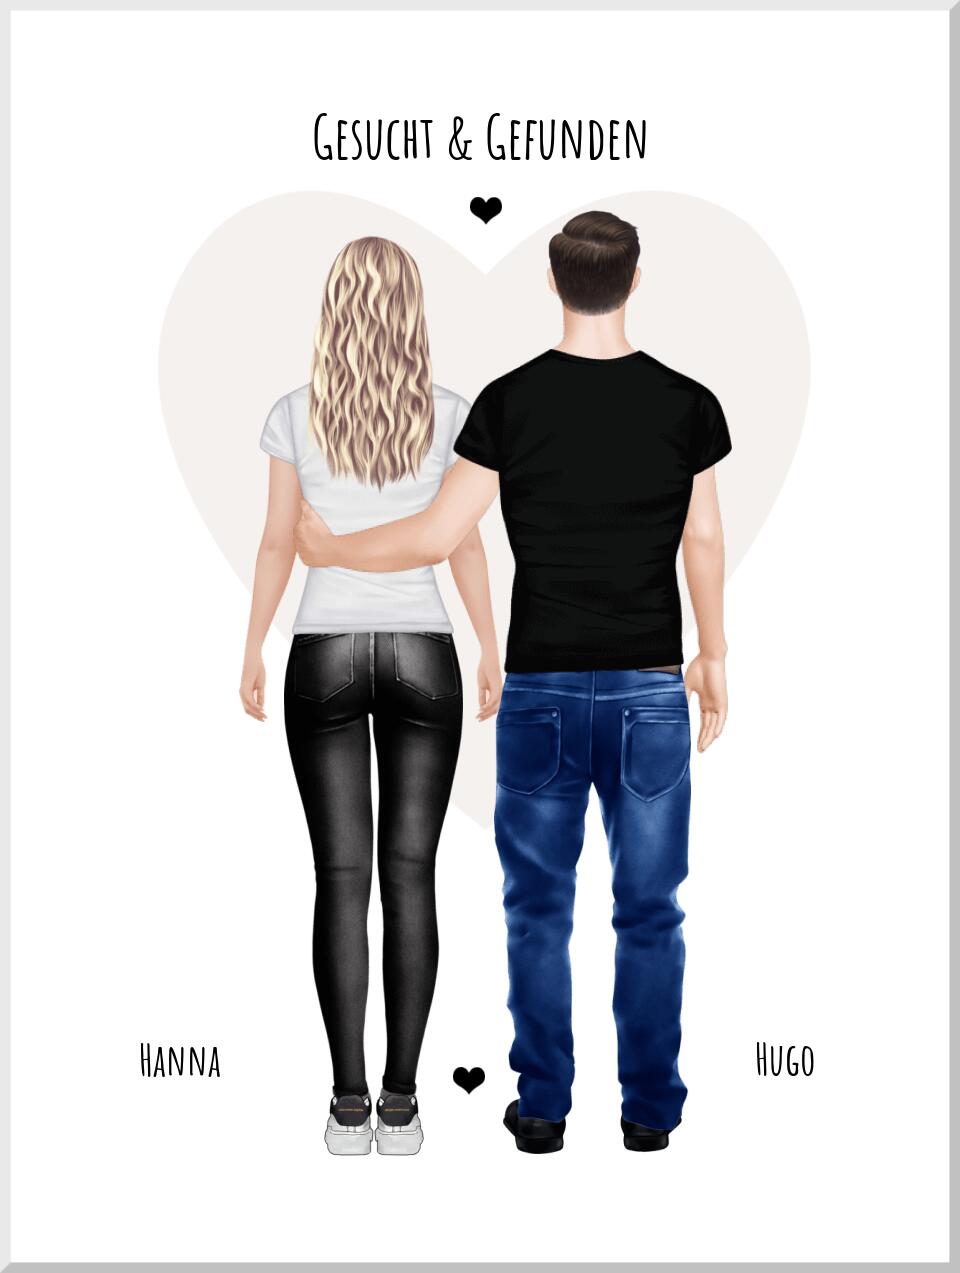 Gesucht & gefunden - personalisiertes Poster Geschenk für Paare - Partner - Partnerin Partnergeschenk